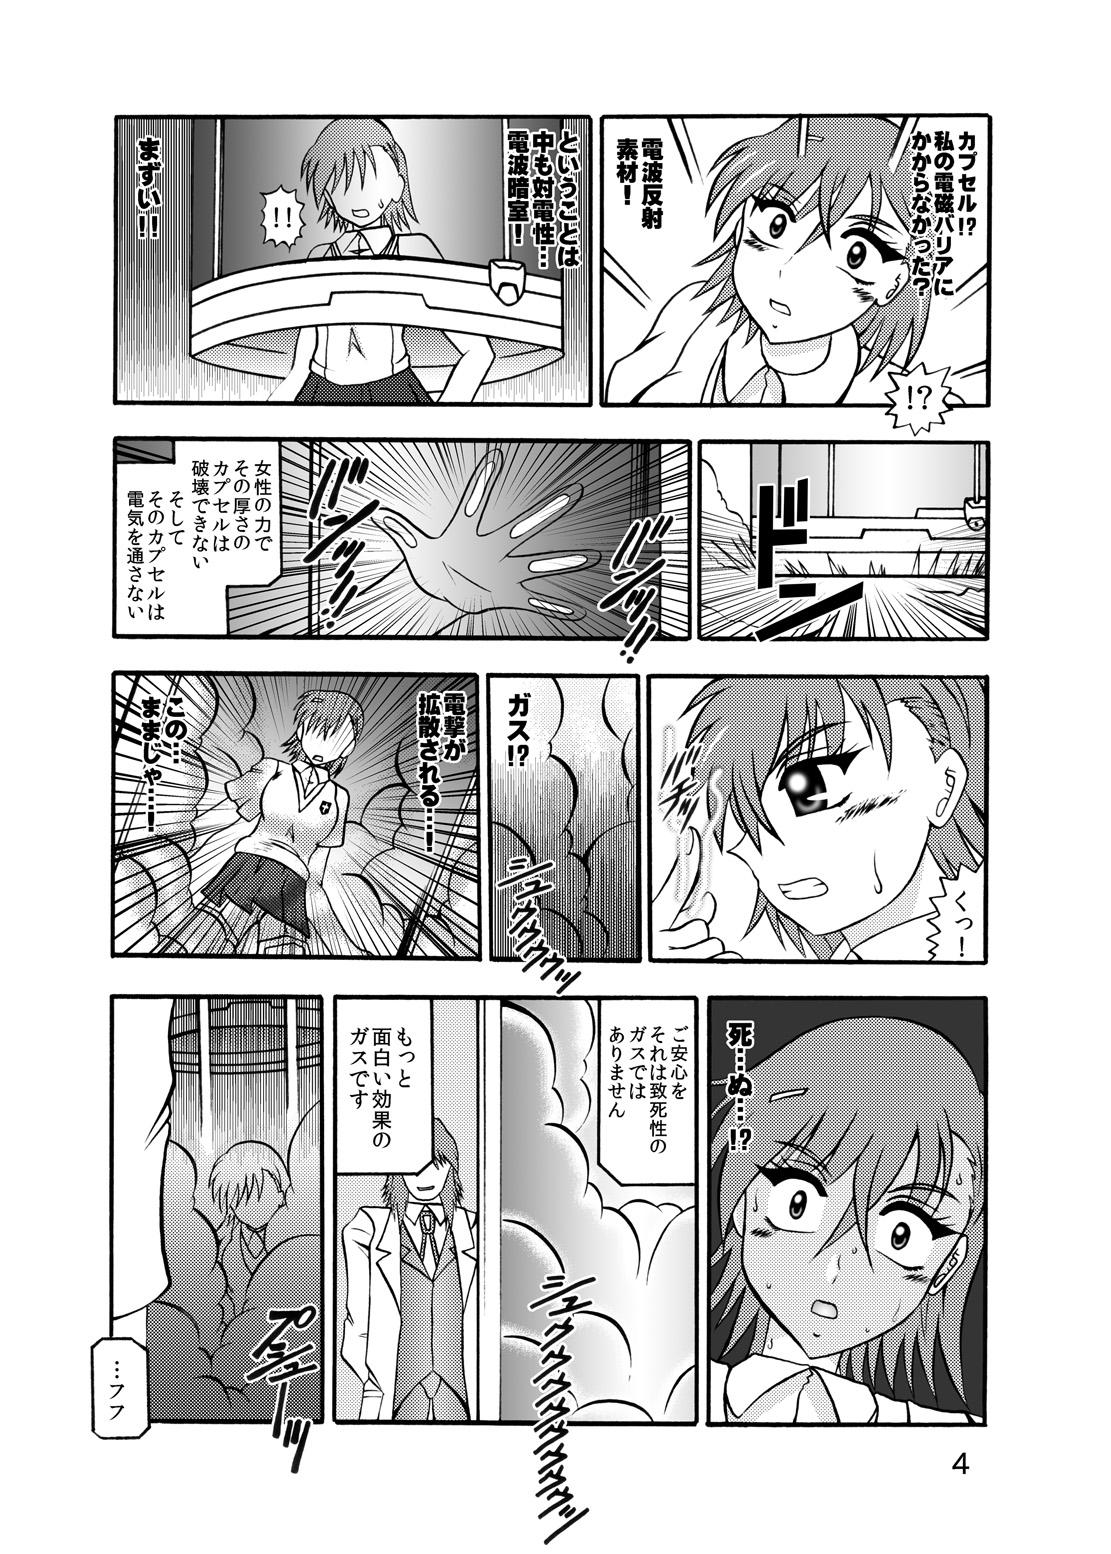 Nasty Inyoku Kaizou: Misaka Mikoto - Toaru kagaku no railgun Titfuck - Page 2